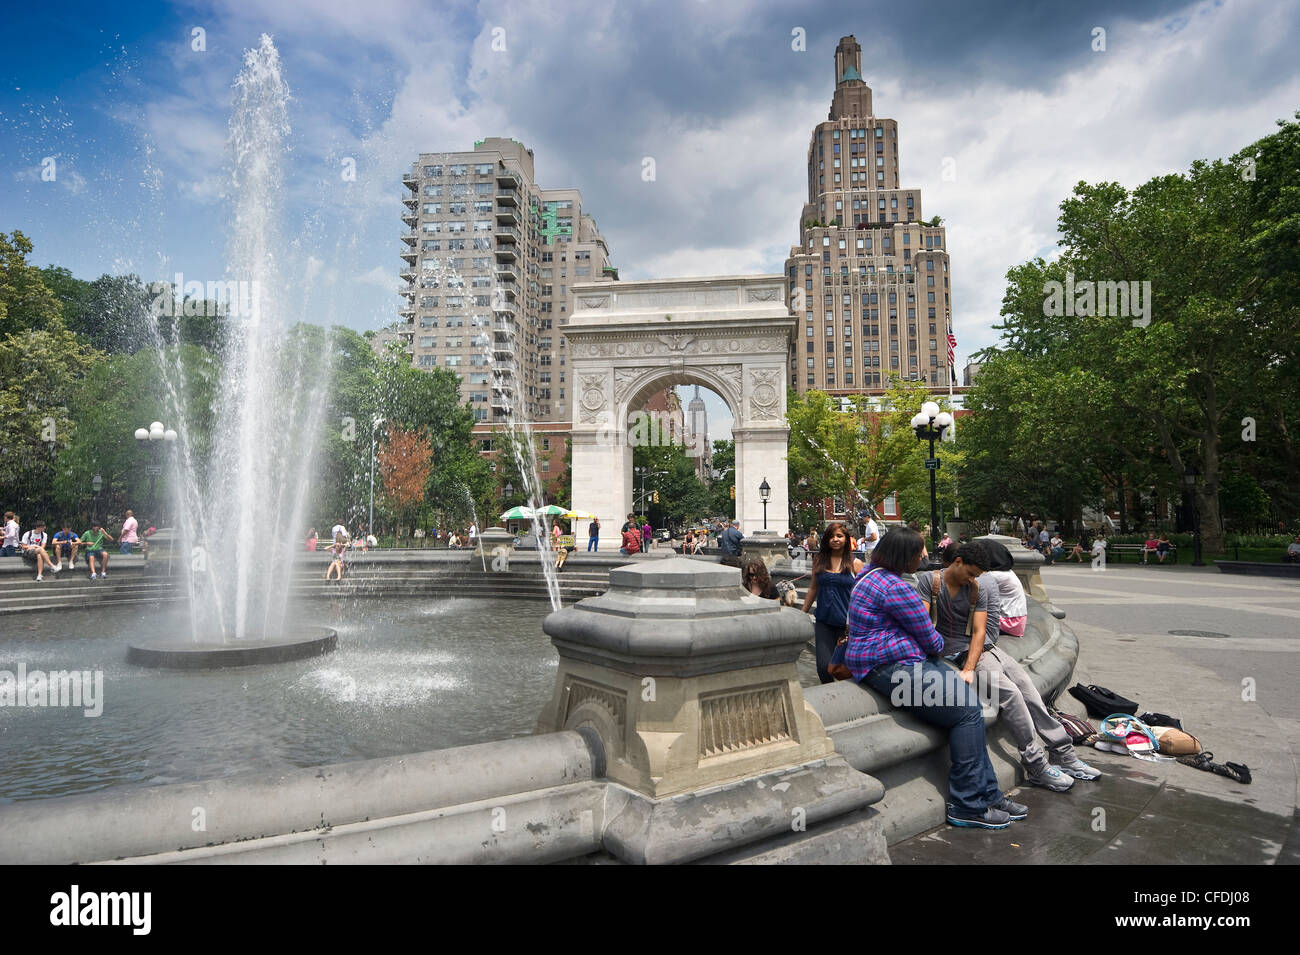 Fontana centrale con Washington Square Arch in background, Washington Square Park, Manhattan, New York, New York, Stati Uniti d'America Foto Stock